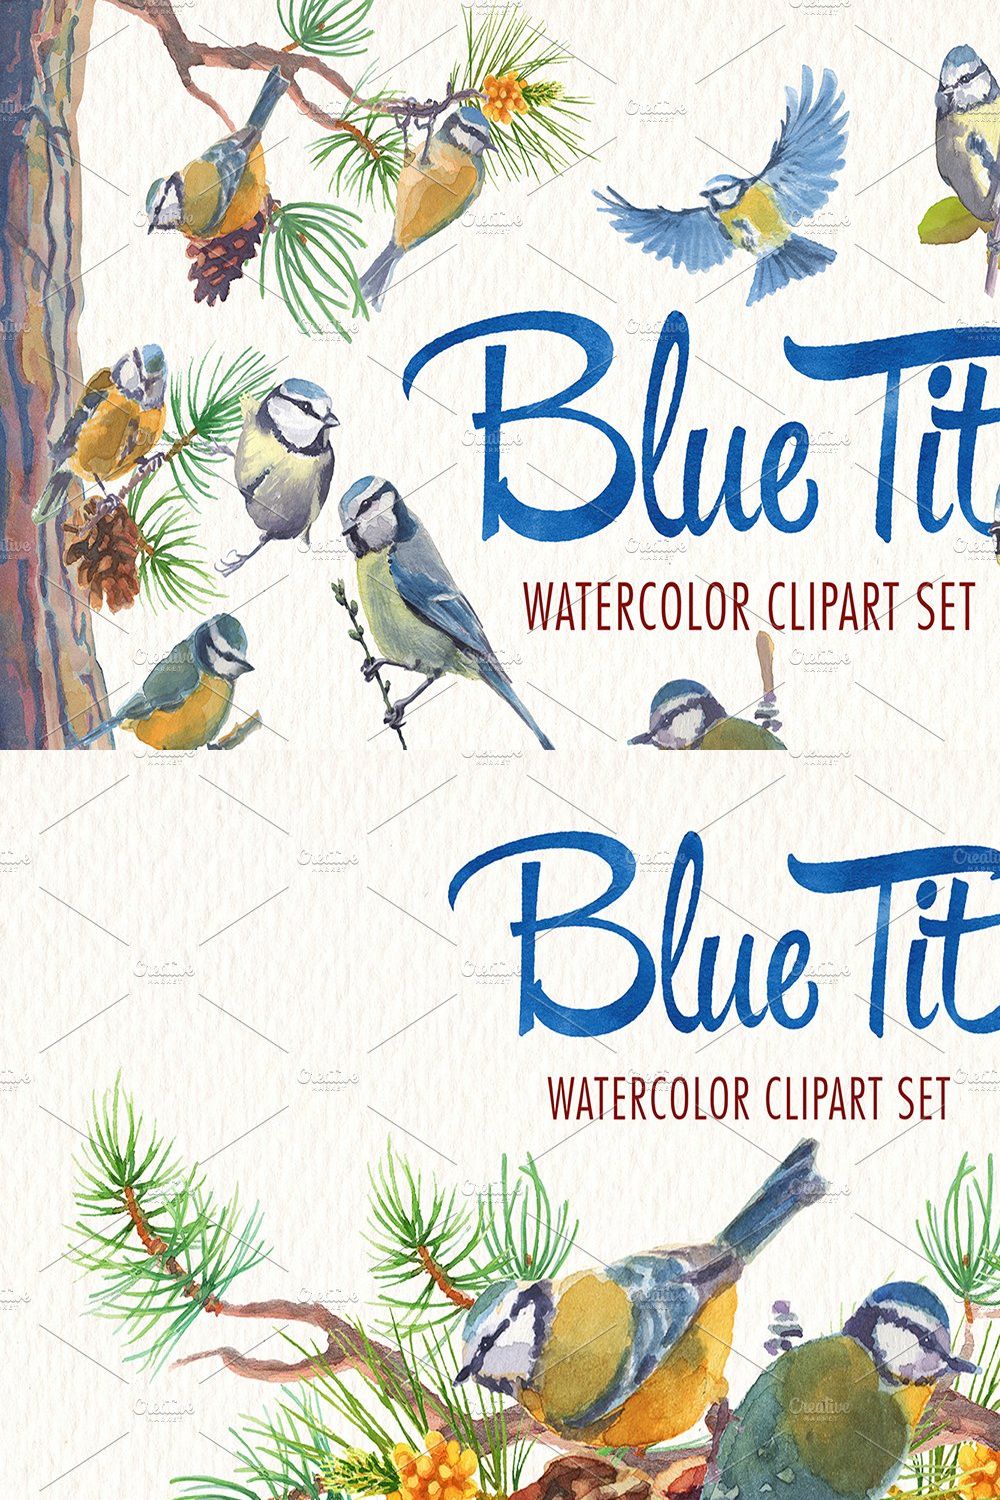 Watercolor blue tit bird clipart pinterest preview image.